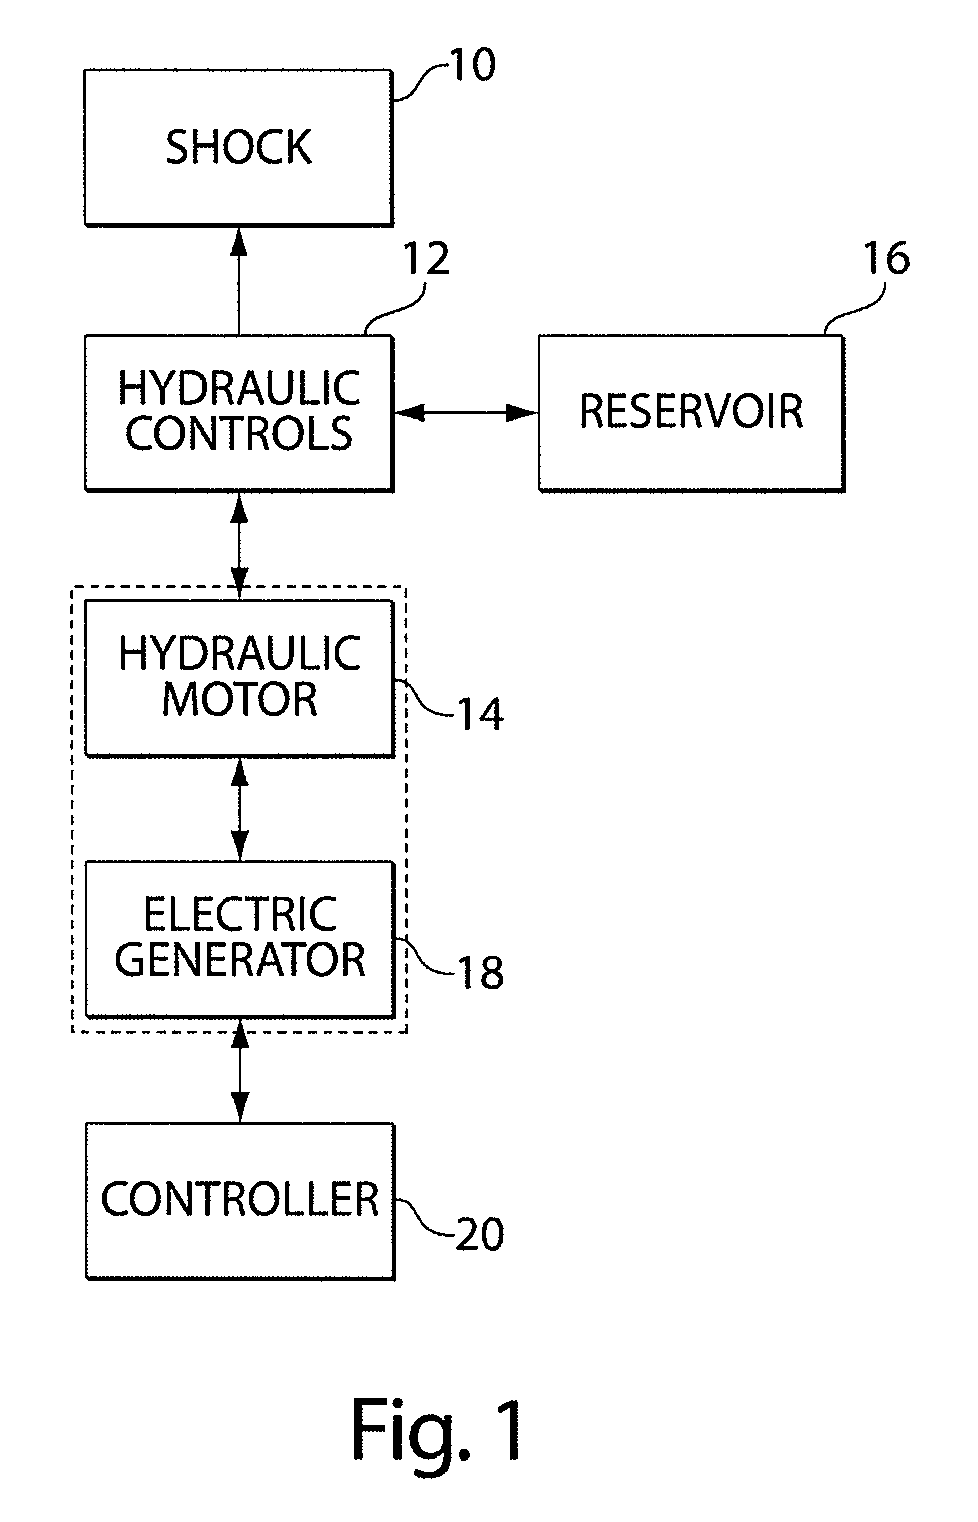 Hydraulic energy transfer